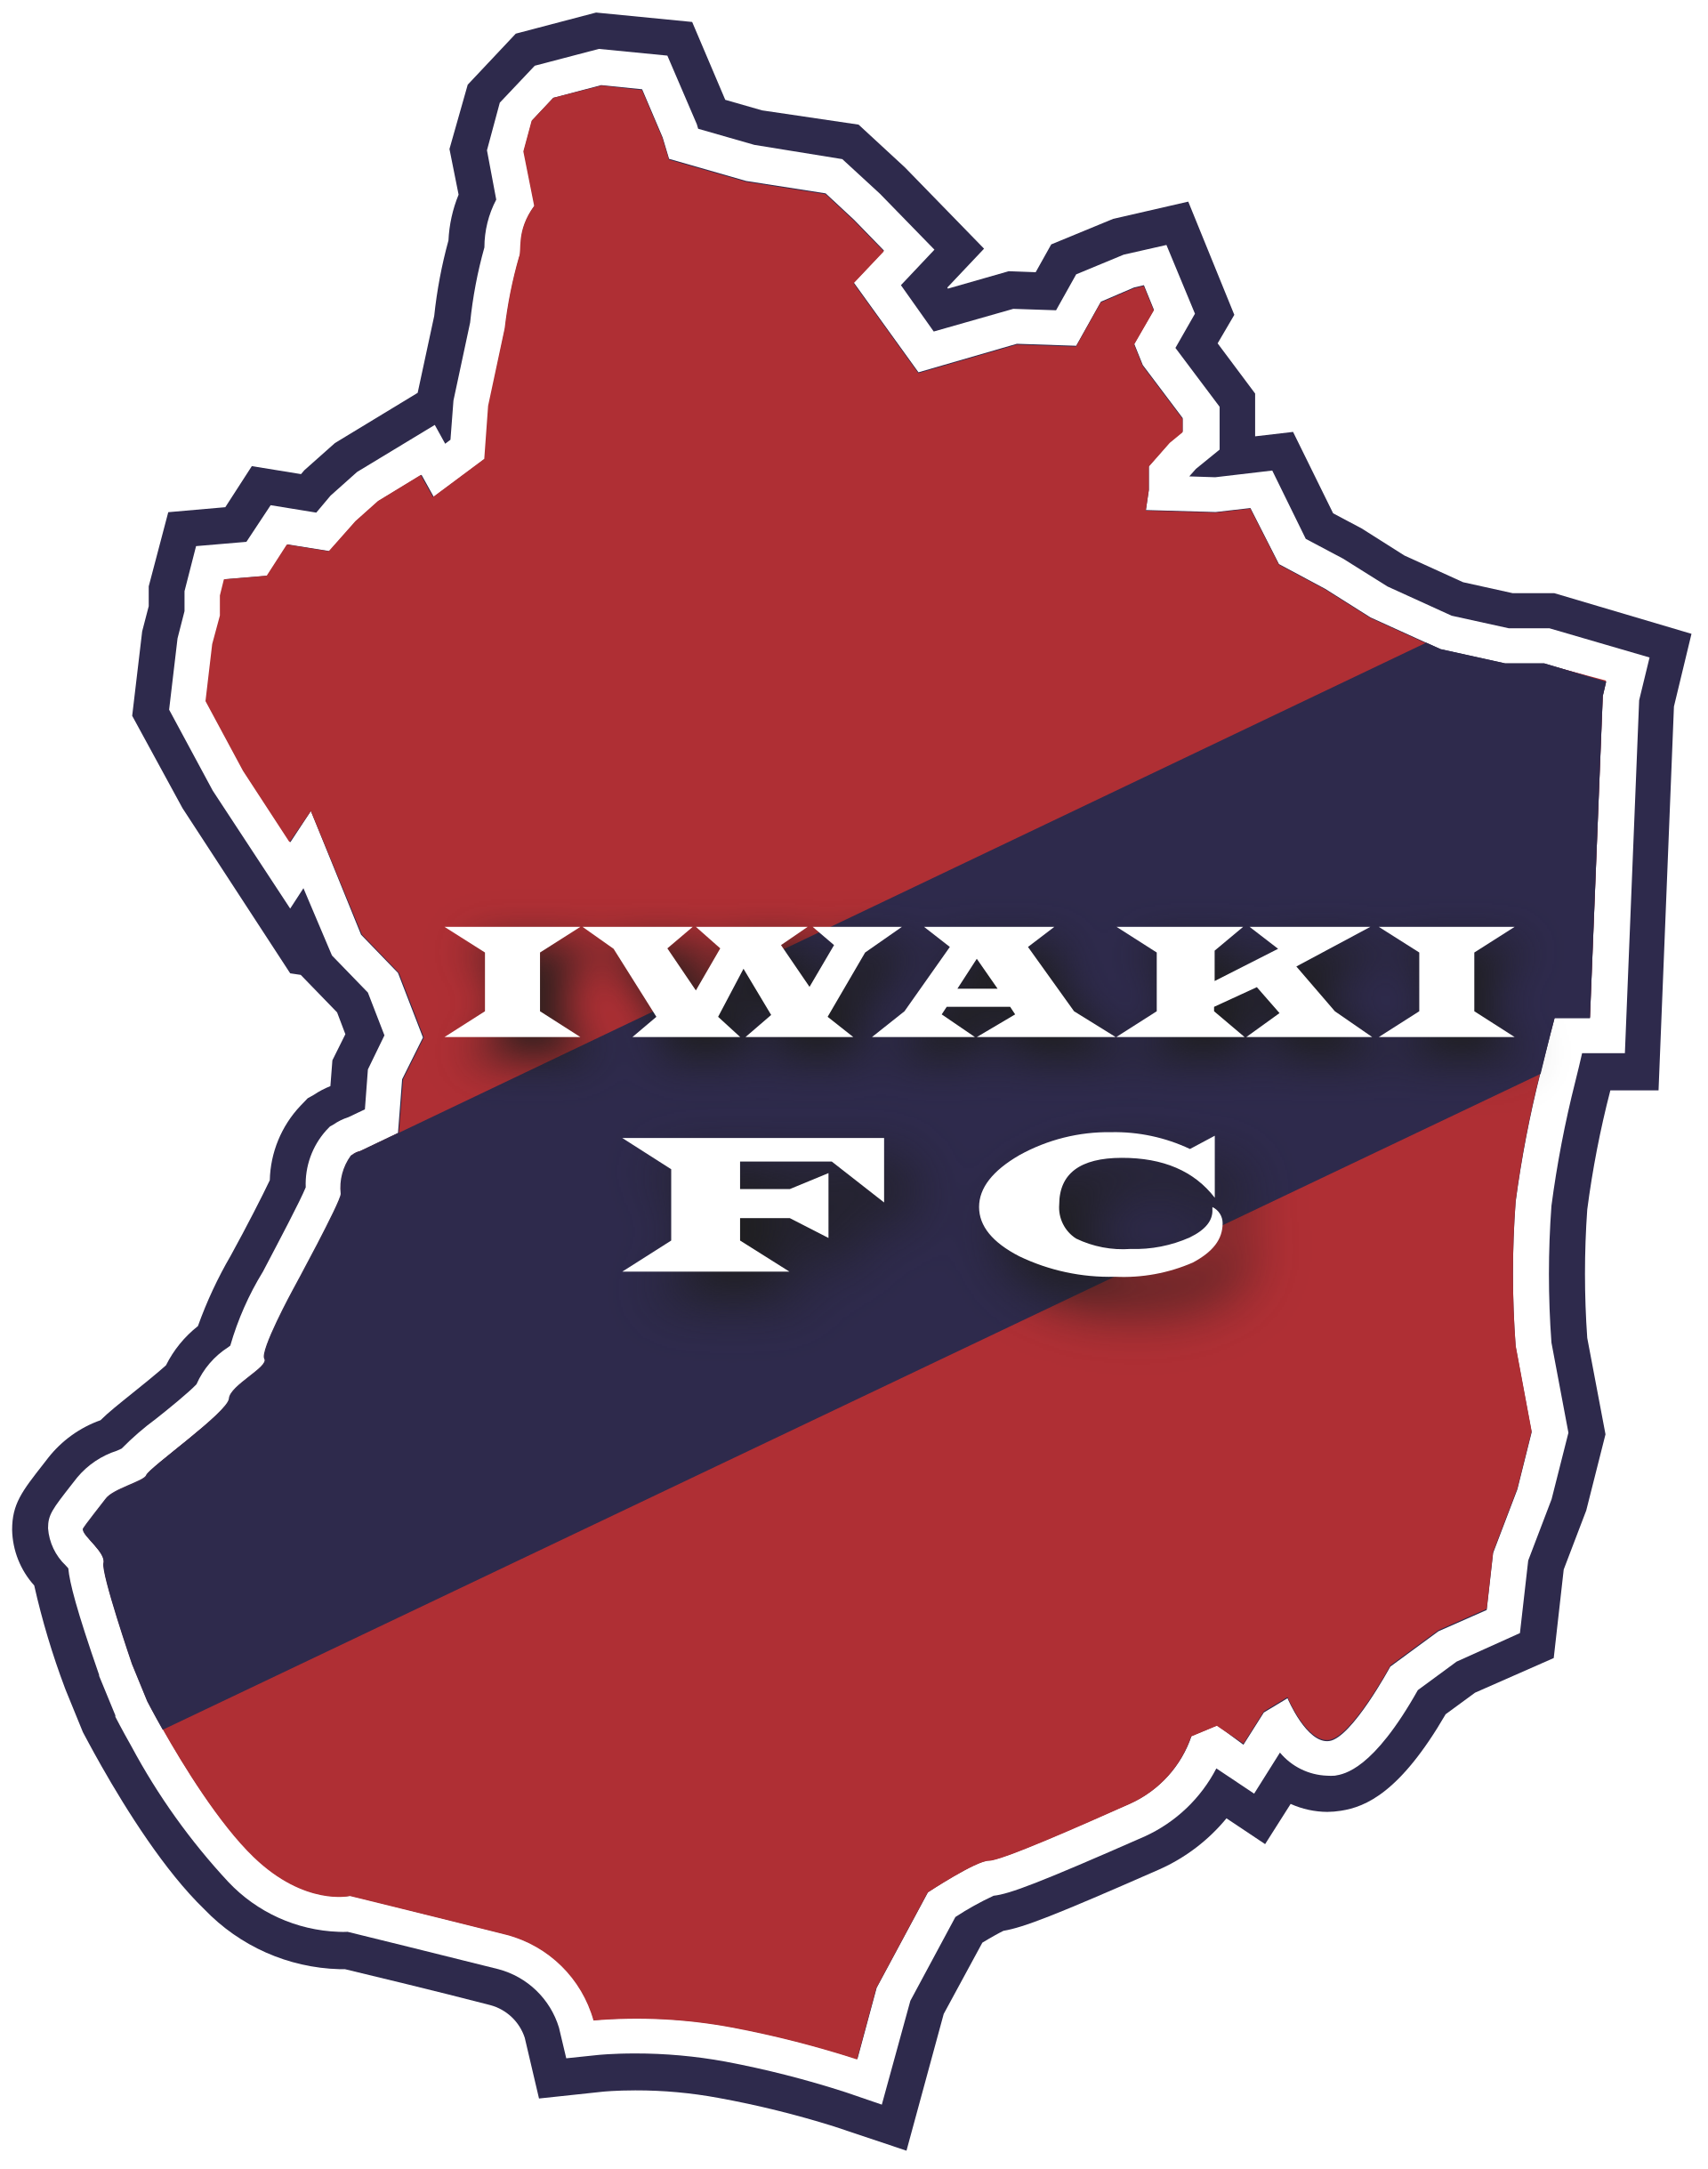 Wappen Iwaki FC